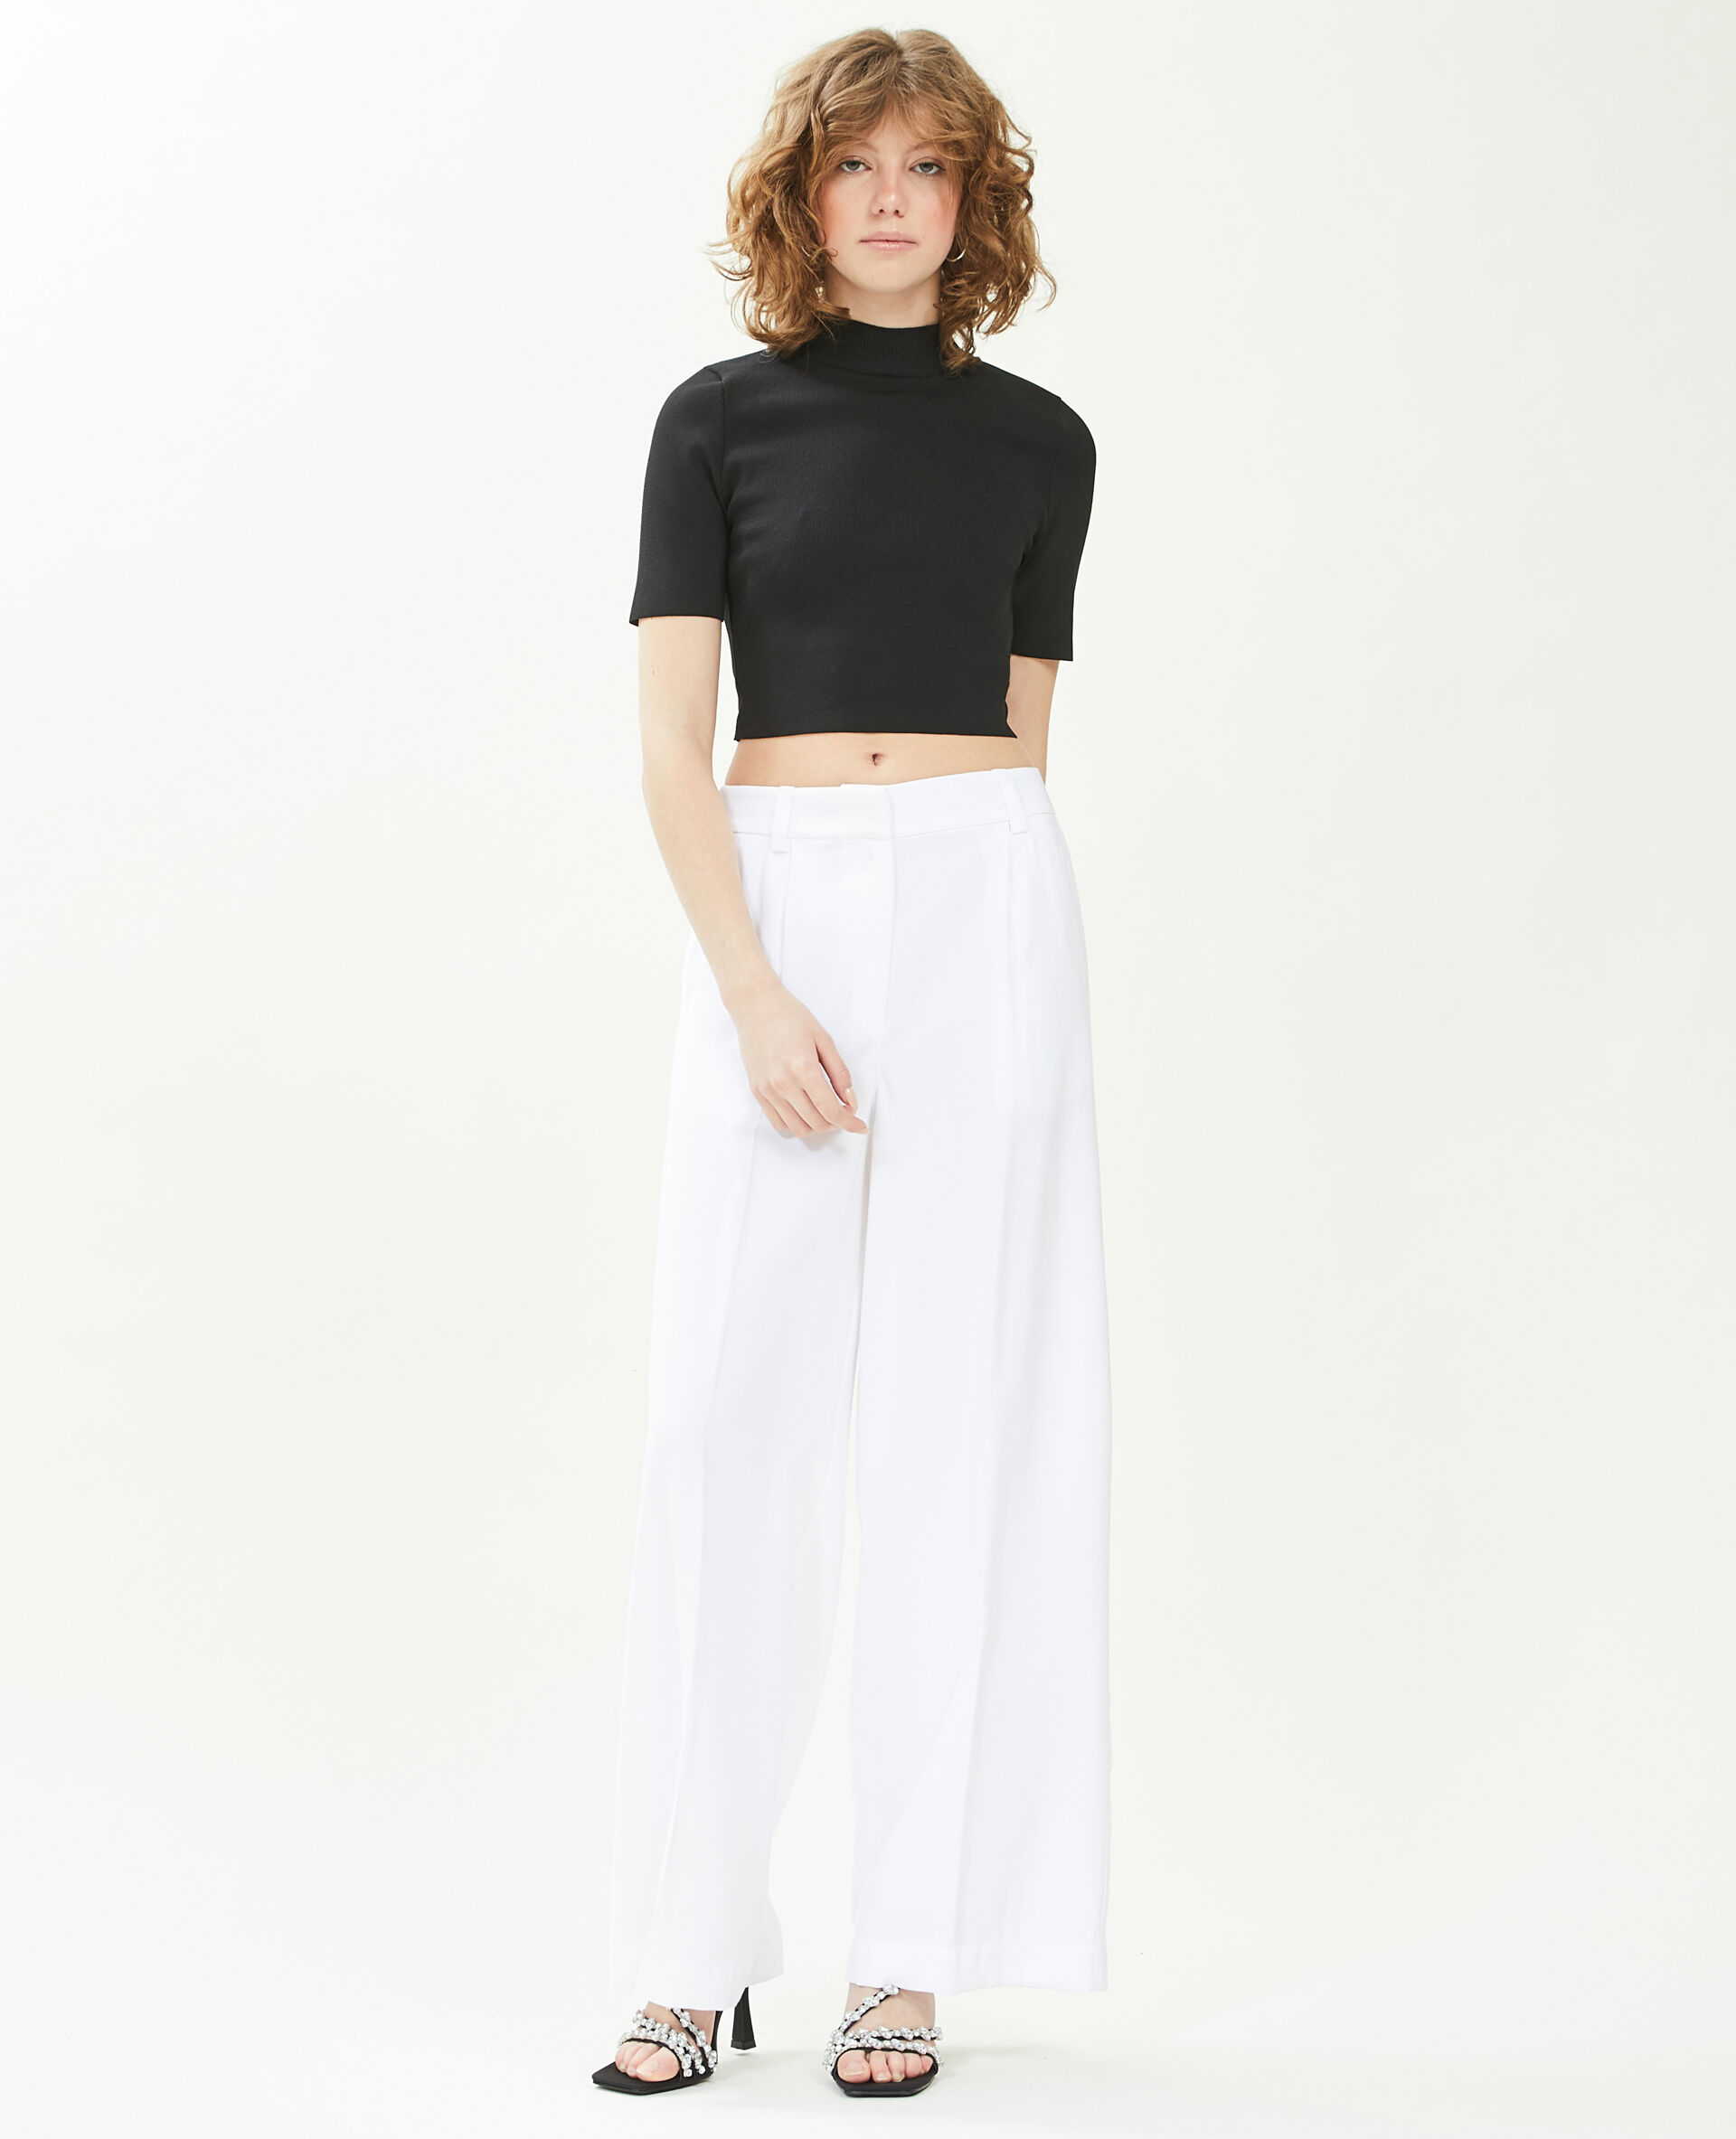 Pantalon large en toile fluide Femme - Couleur blanc - Taille 40 - Pantalon Femme - PIMKIE